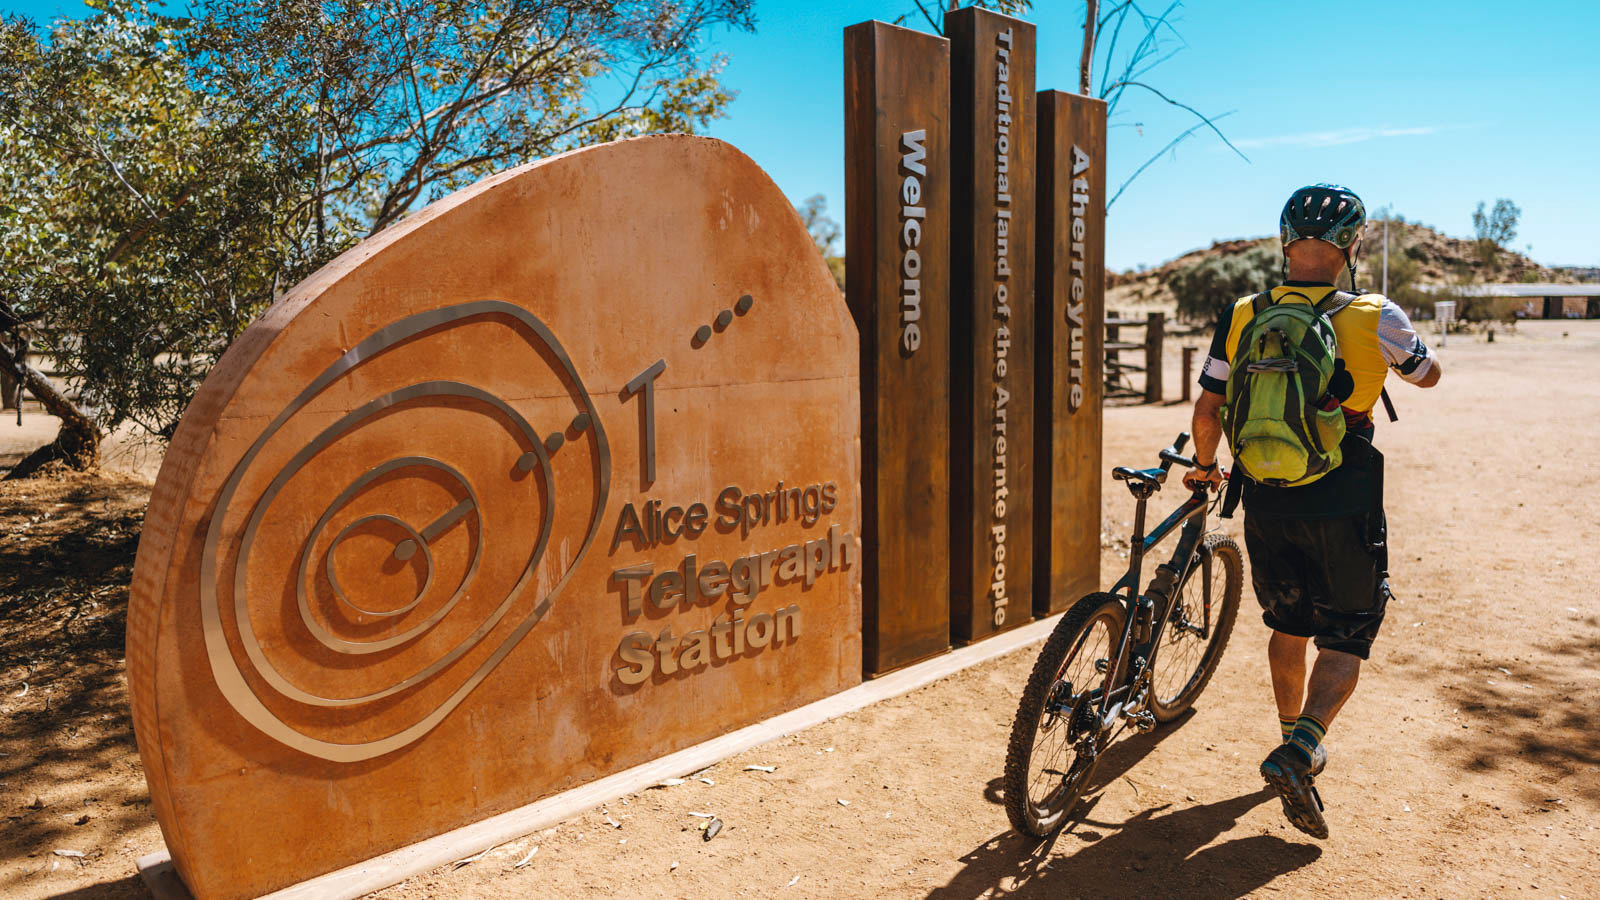 Alice Springs offroad dirt bike adventure